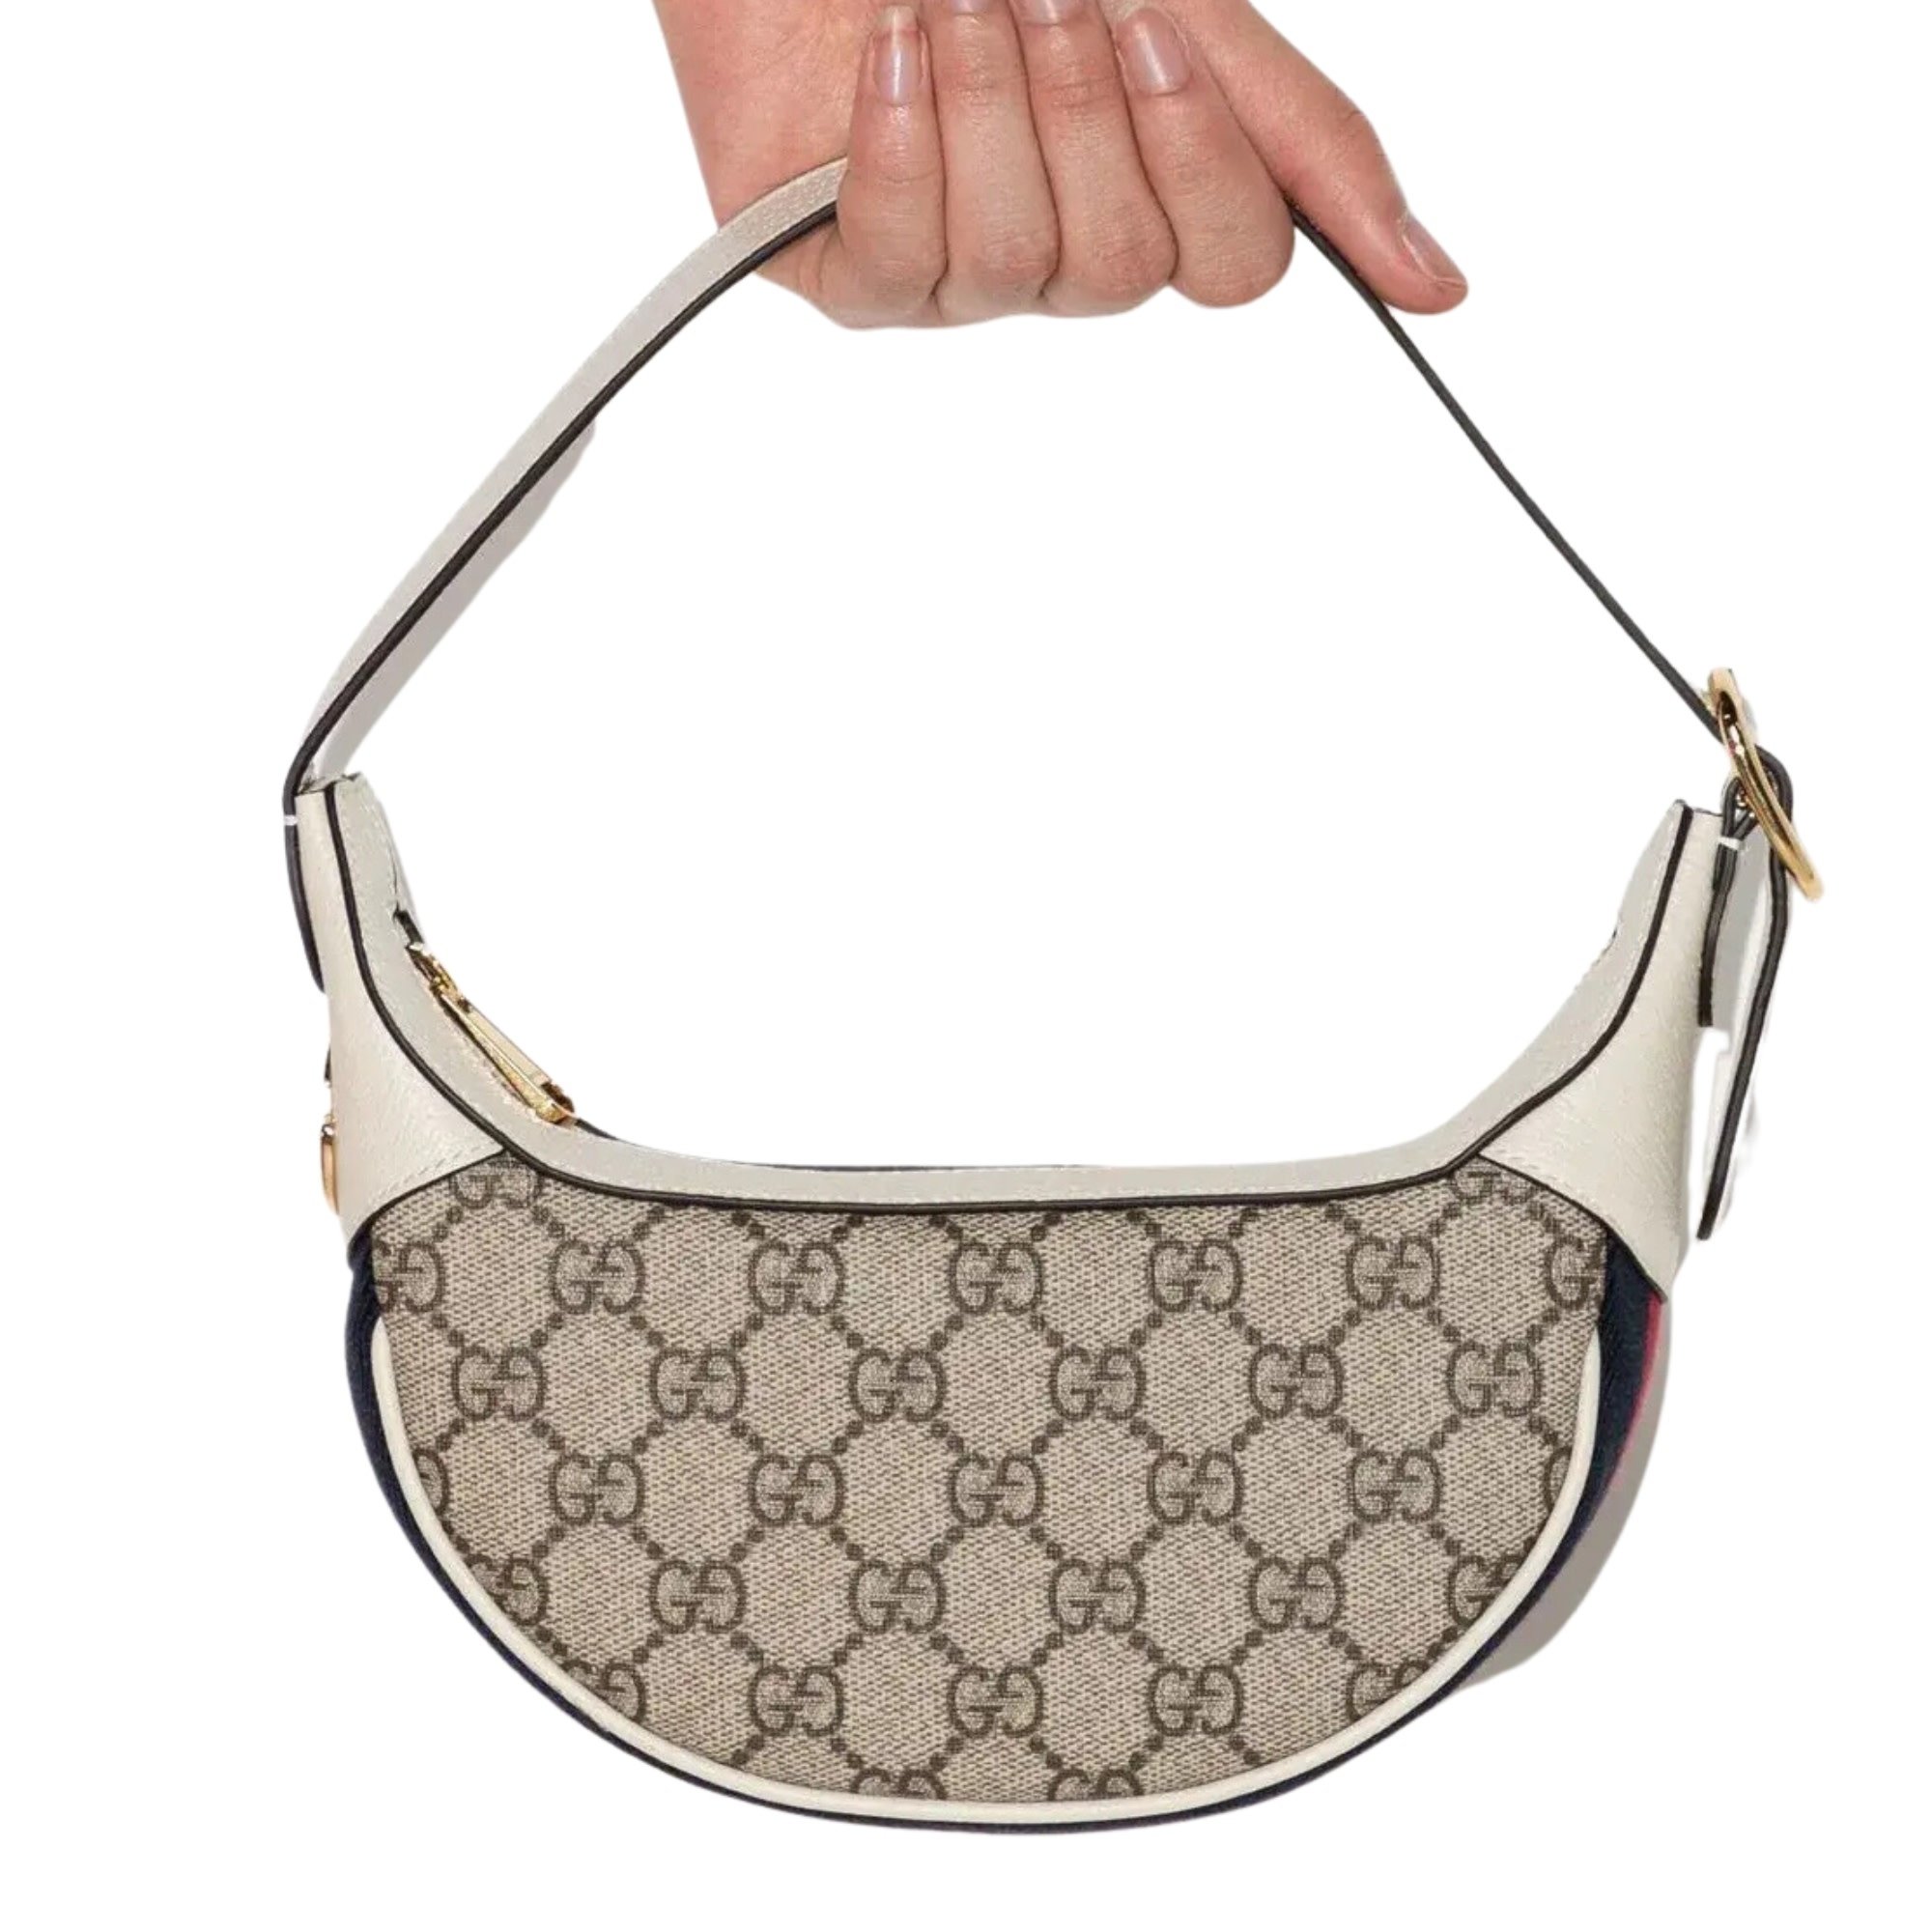 Gucci - Royal GG Canvas Hobo Bag